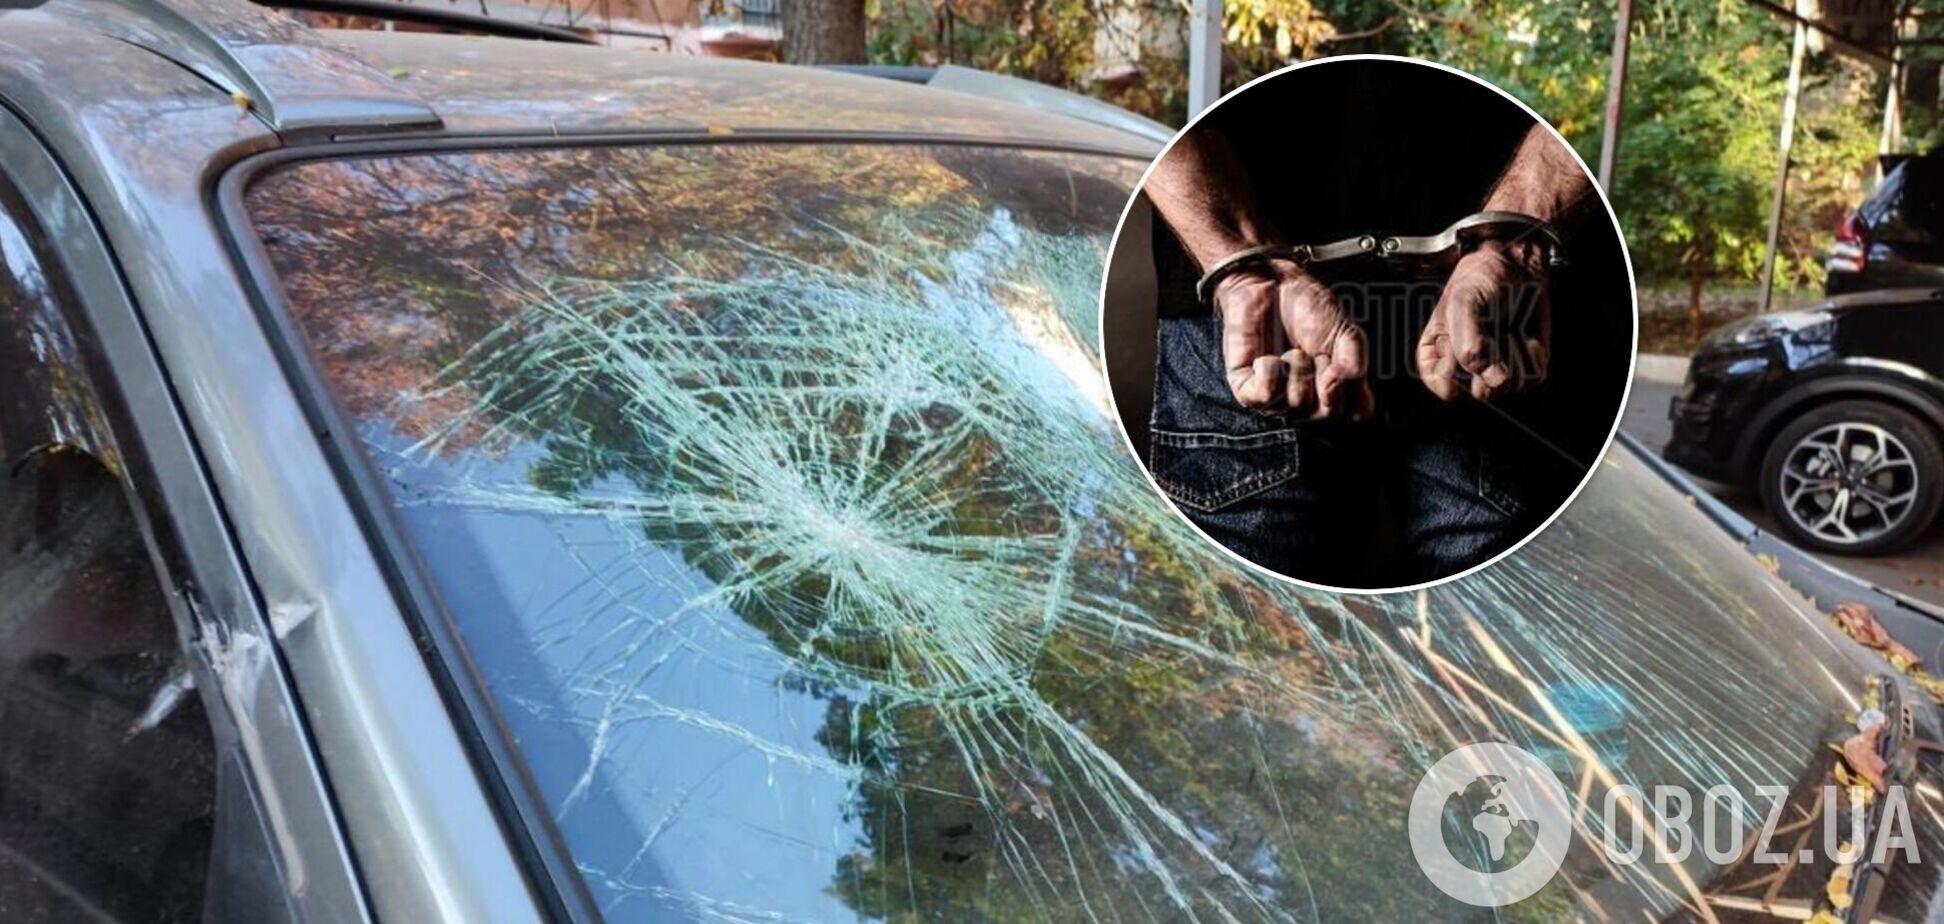 В Одессе мужчина забросал авто полиции камнями и ударил ножом силовика в грудь. Фото и видео